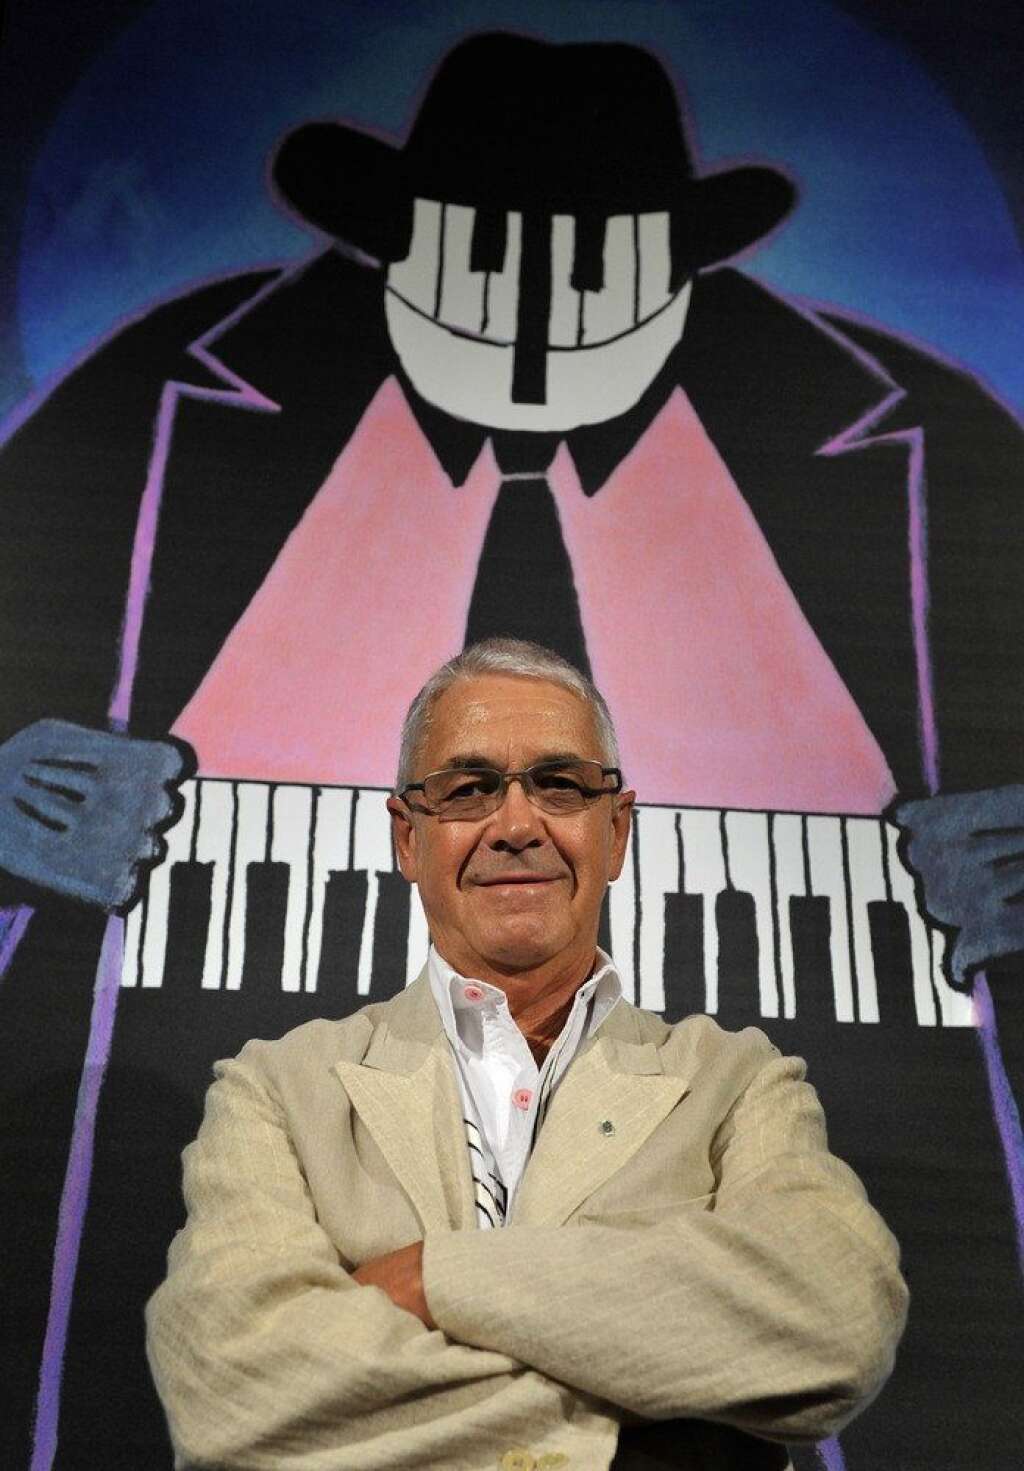 Claude Nobs - Le fondateur du Festival de Jazz de Montreux, est décédé à l'âge de 76 ans. <a href="http://www.huffingtonpost.fr/2013/01/10/claude-nobs-deces-suisse_n_2454440.html">Après une chute à skis de fond</a>, Claude Nobs avait été opéré à Lausanne avant de tomber dans le coma.